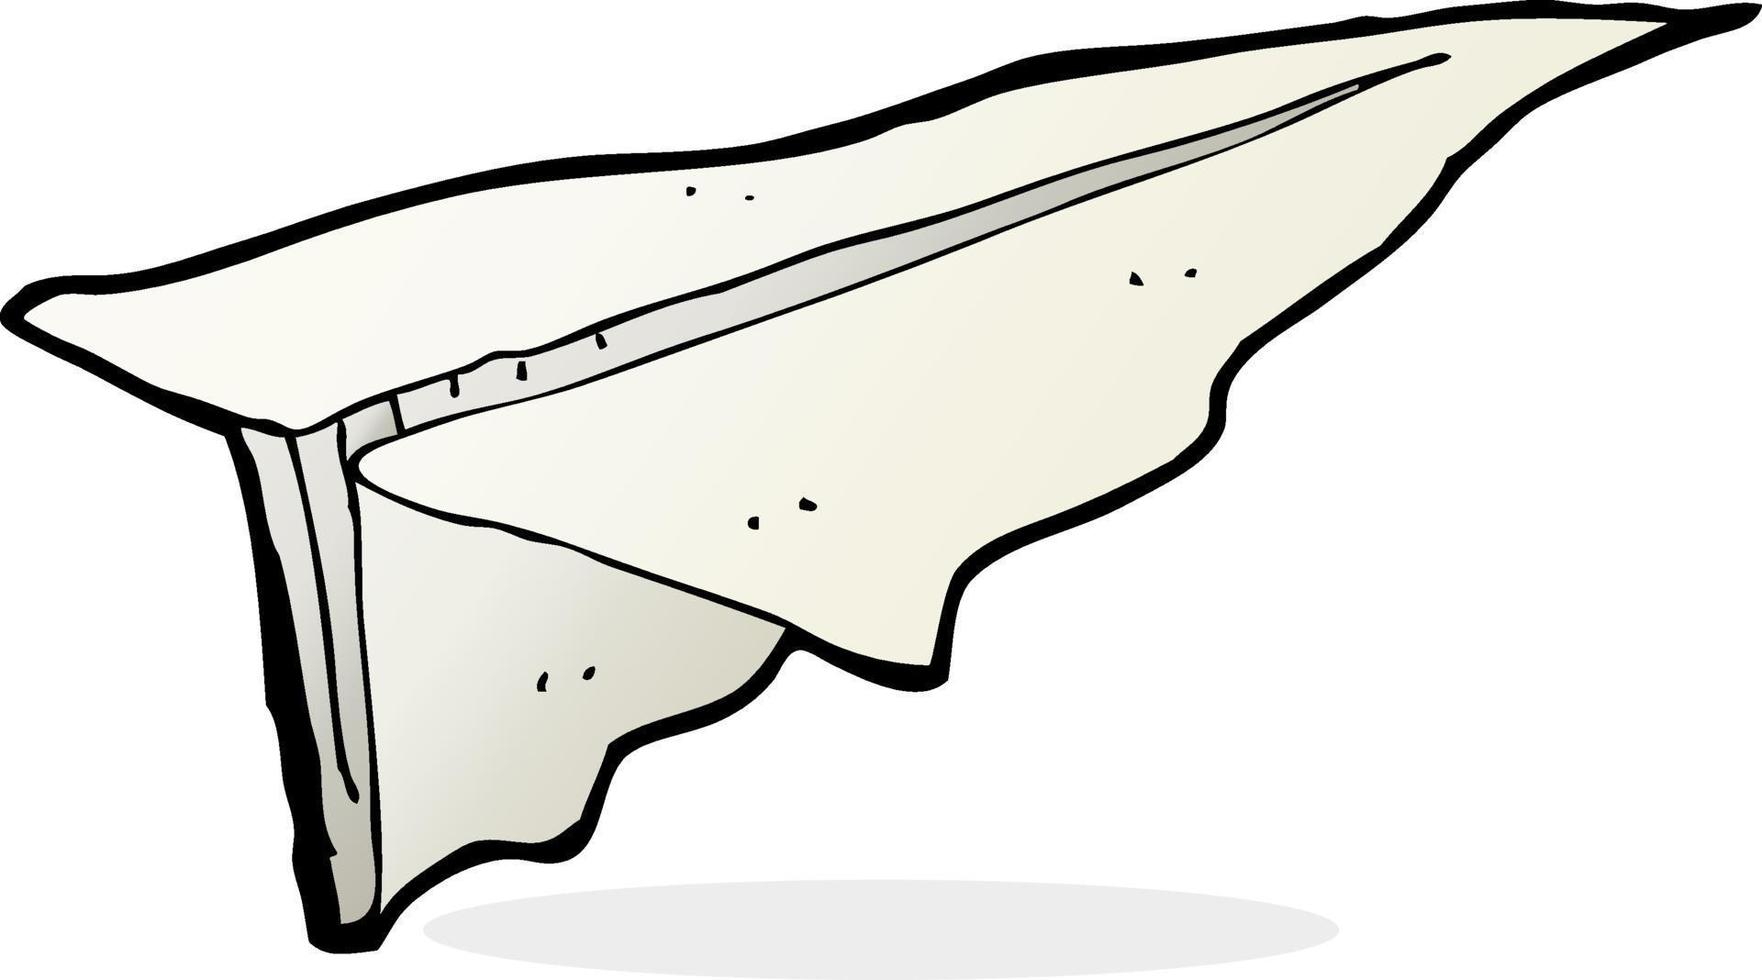 avião de papel de desenho animado vetor